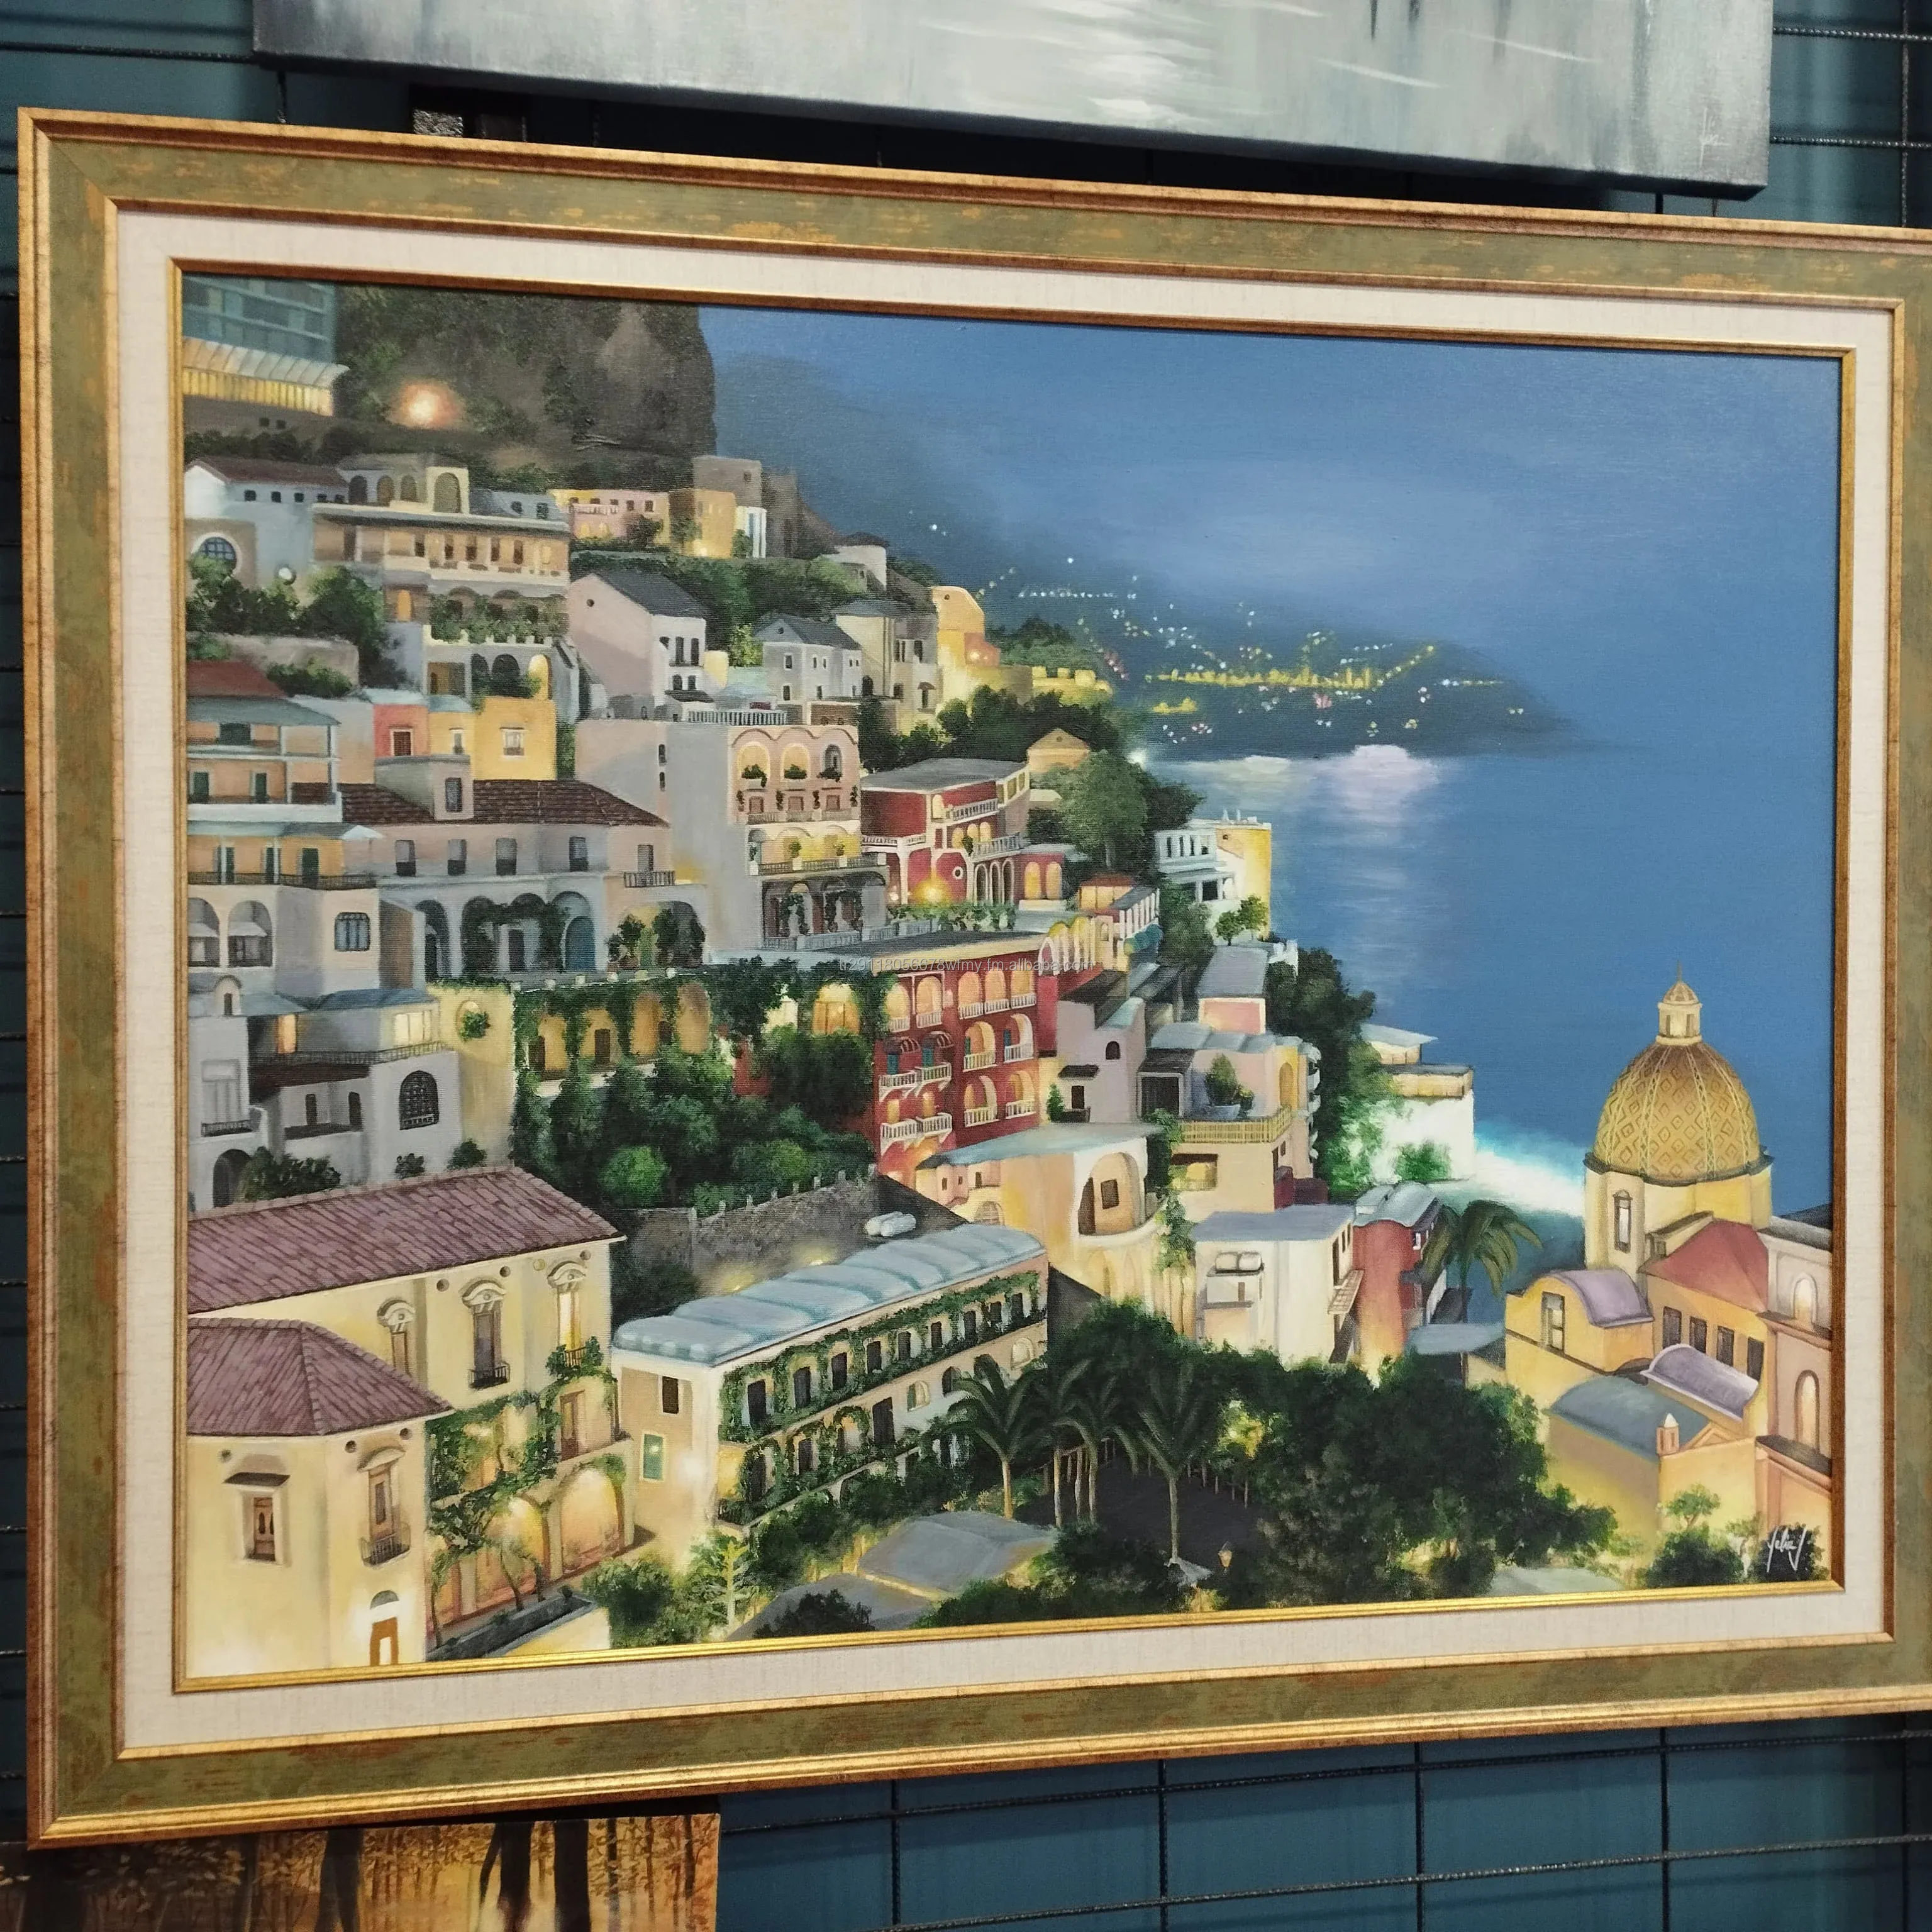 Bảo tàng nghệ thuật thực tế cảnh quan Thành Phố Cảnh quan thành phố bức tranh sưu tập bờ biển Amalfi bức tranh gốc trên vải nghệ sĩ đã ký